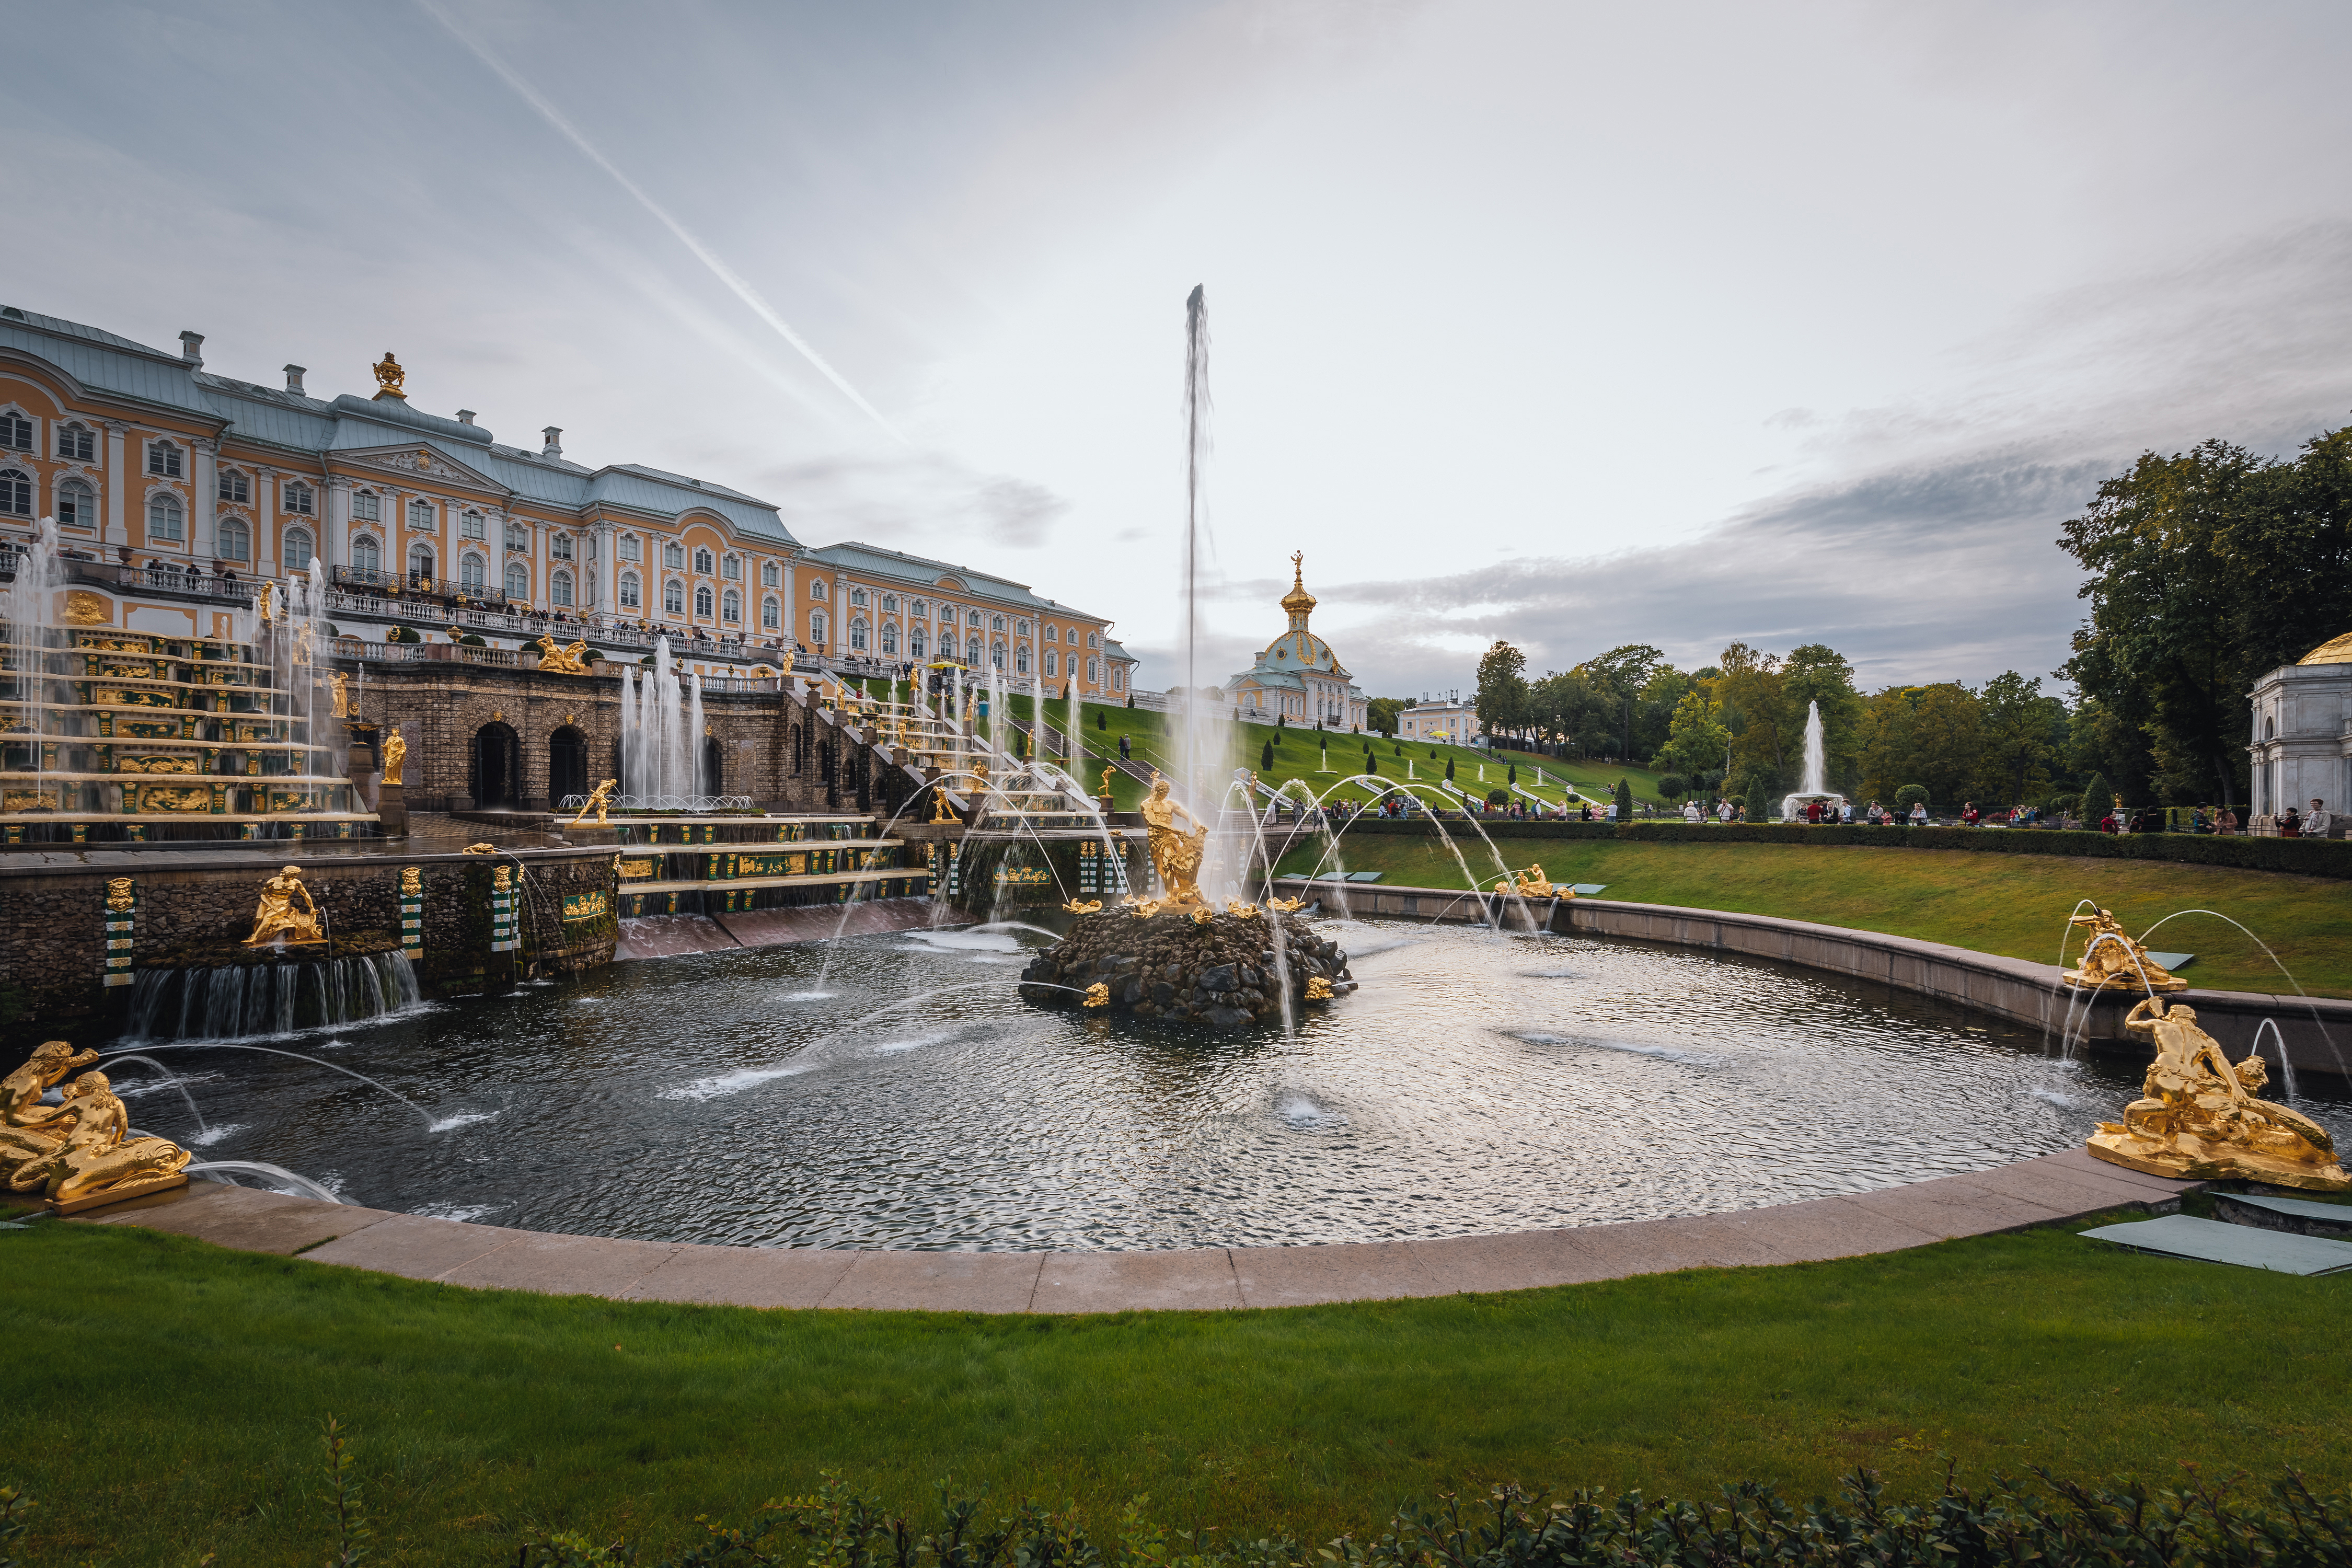 Grand Palace (Peterhof)